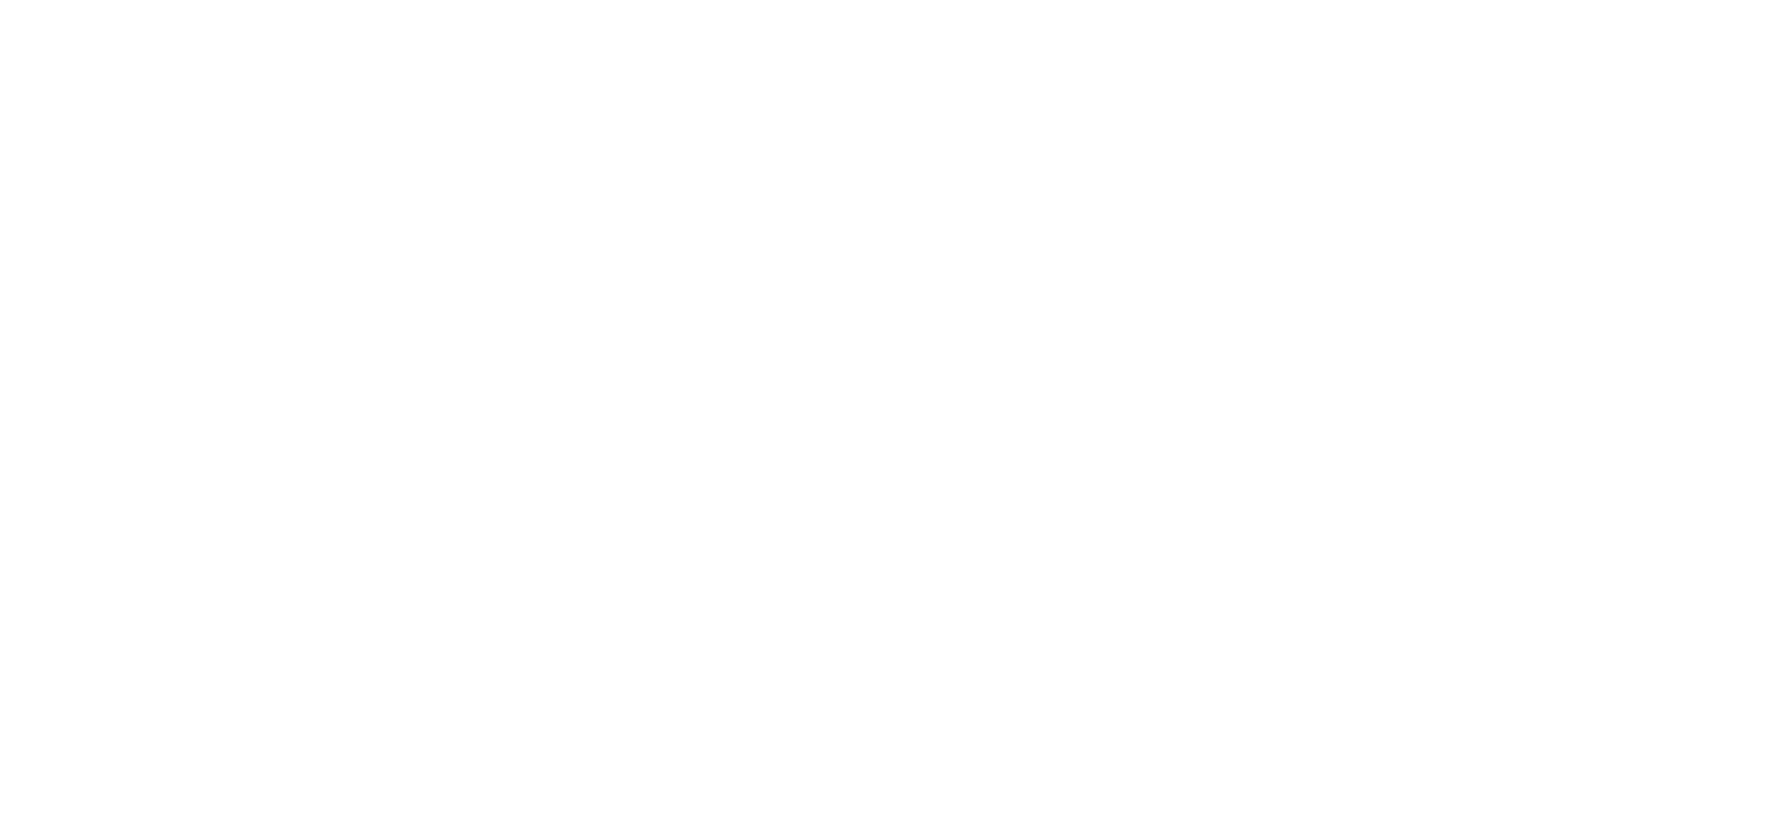 Patrones gráficos: patrón gráfico de trading “Tres cuervos negros”, resaltado en azul